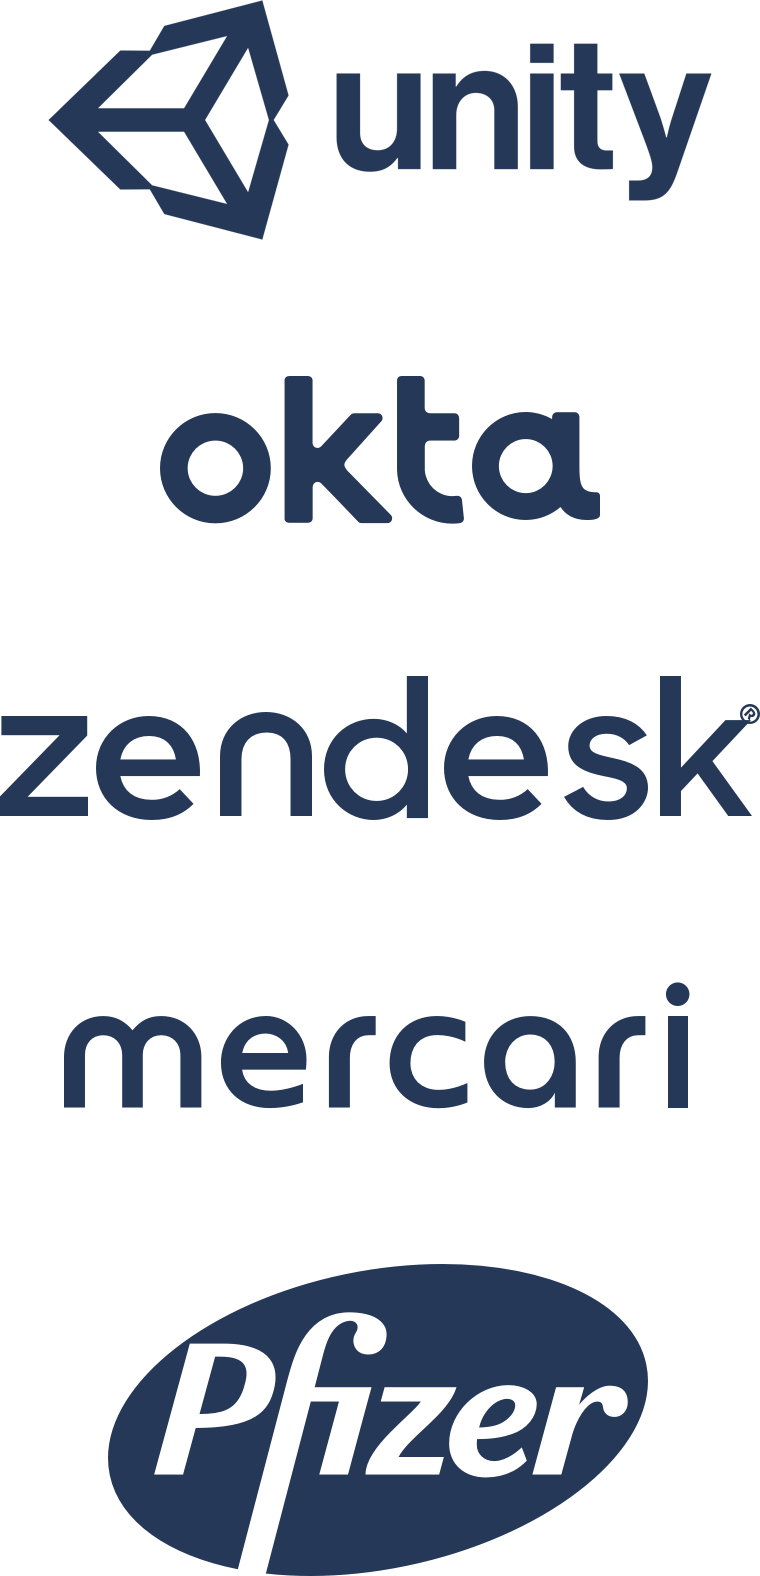 Logo's Unity, Okta, Zendesk, Mercari, Pfizer